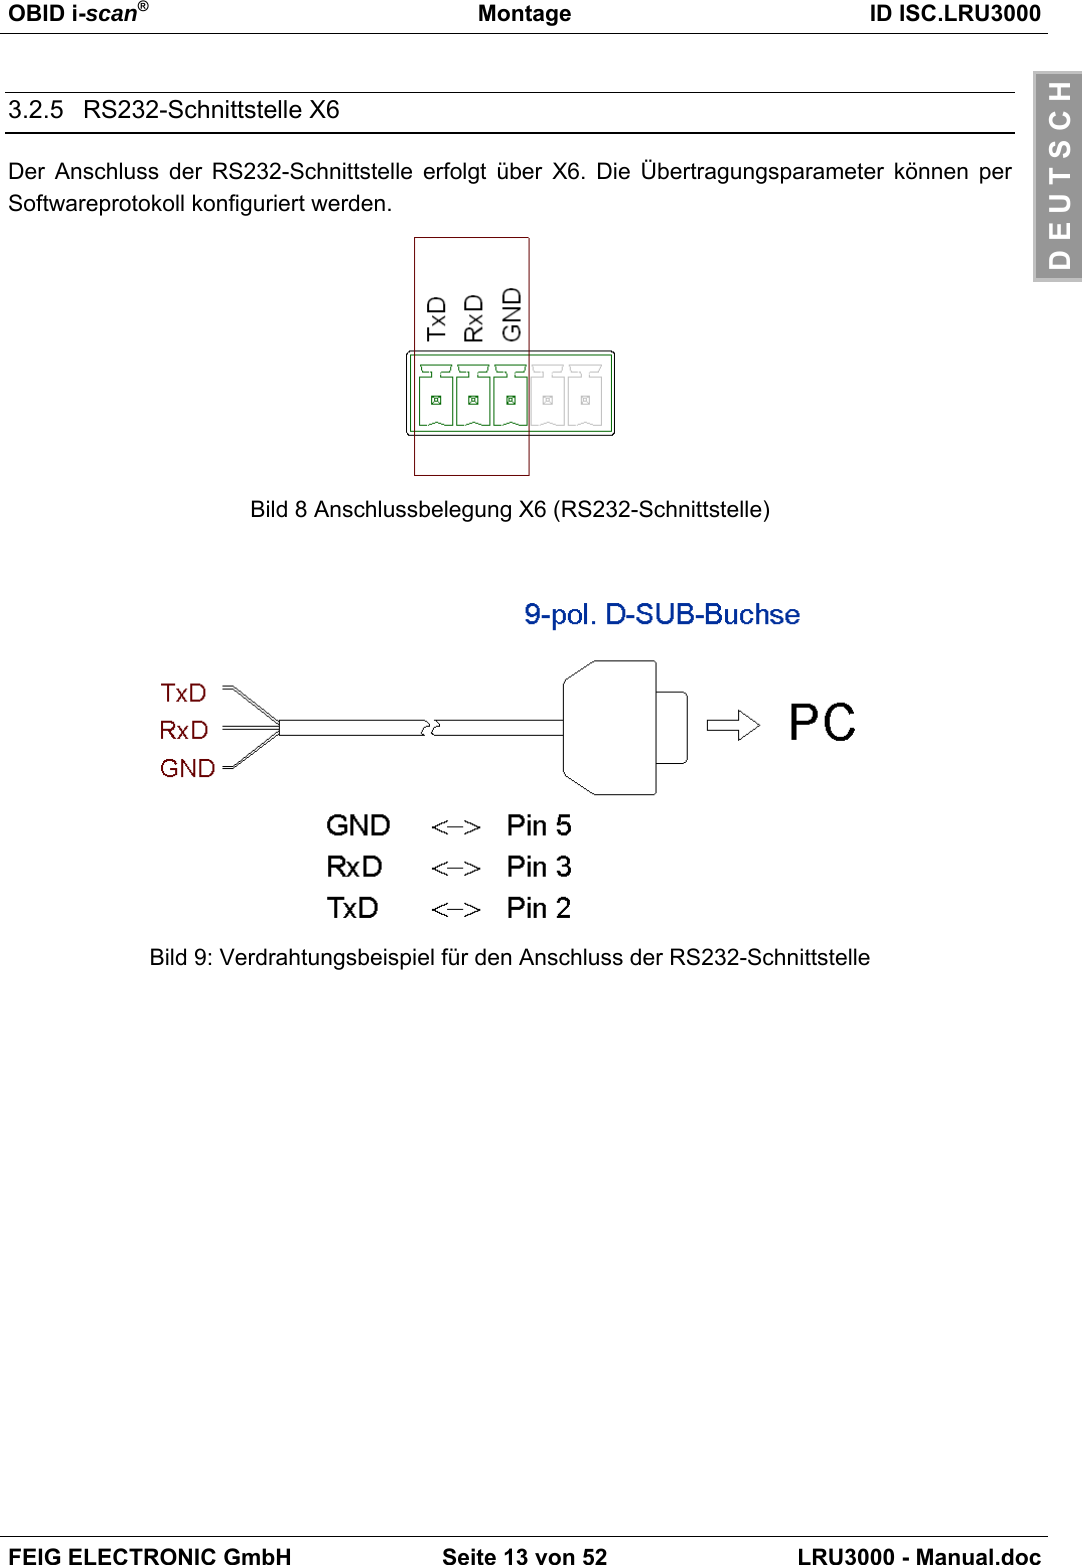 OBID i-scan®Montage ID ISC.LRU3000FEIG ELECTRONIC GmbH Seite 13 von 52 LRU3000 - Manual.docD E U T S C H3.2.5 RS232-Schnittstelle X6Der Anschluss der RS232-Schnittstelle erfolgt über X6. Die Übertragungsparameter können perSoftwareprotokoll konfiguriert werden.Bild 8 Anschlussbelegung X6 (RS232-Schnittstelle)Bild 9: Verdrahtungsbeispiel für den Anschluss der RS232-Schnittstelle